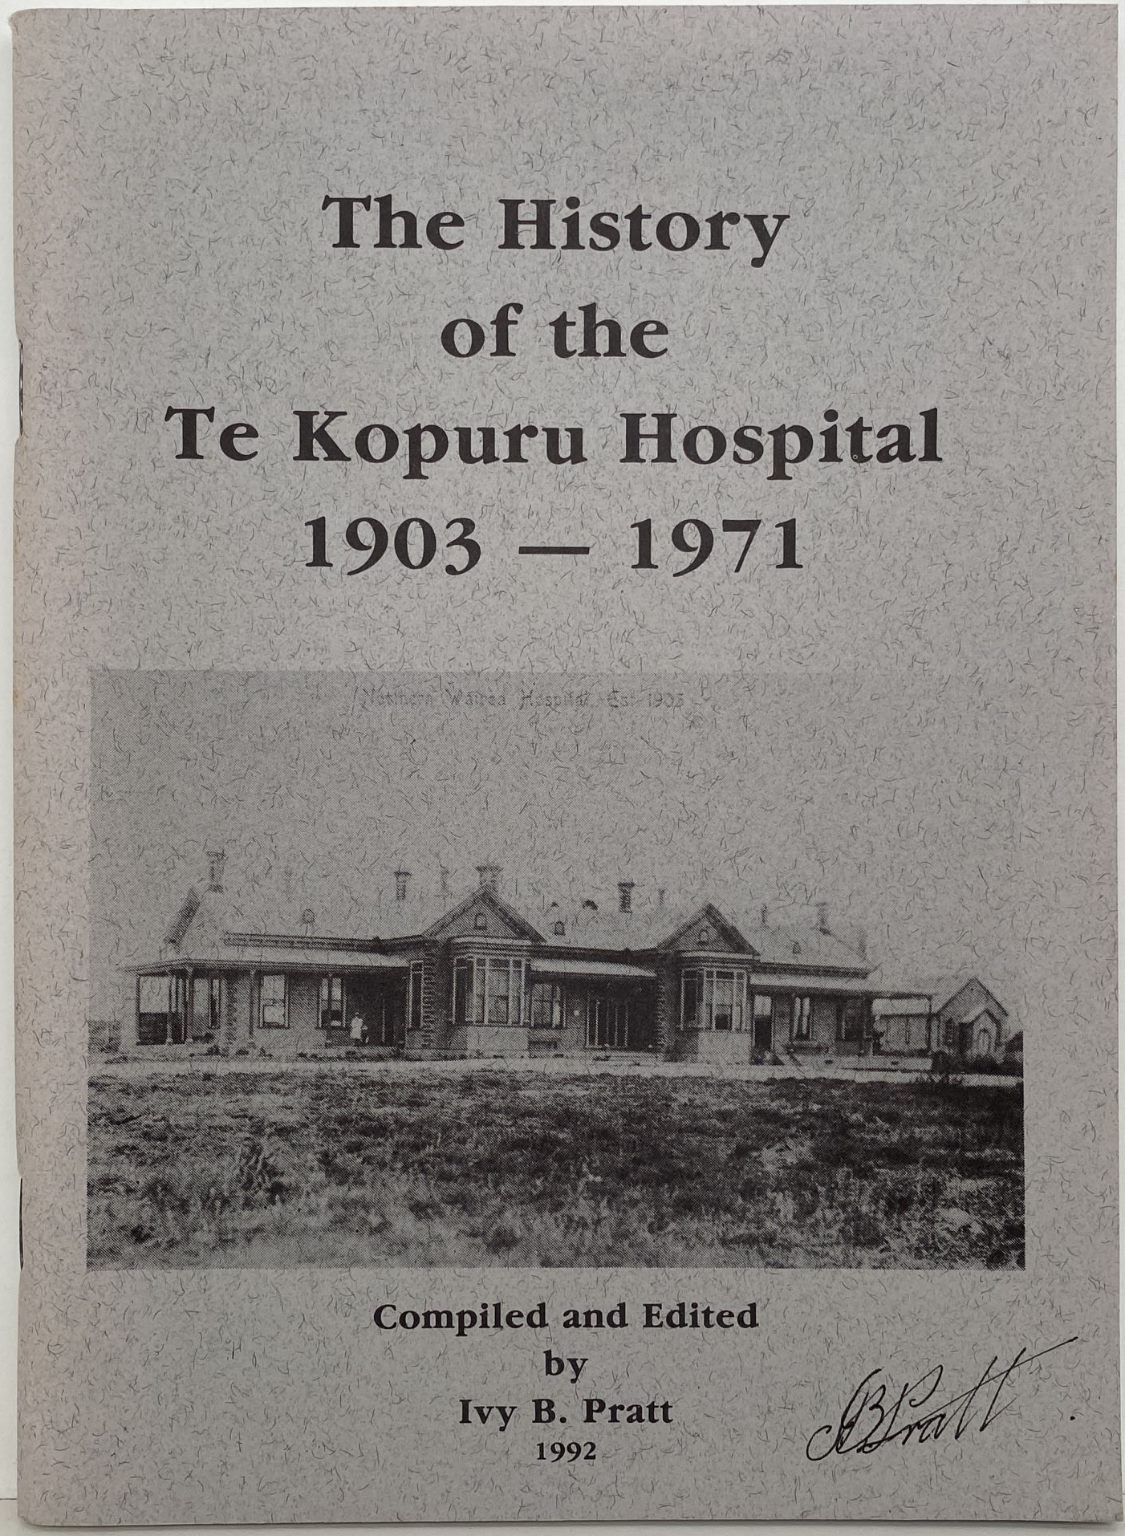 The History of the Te Kopuru Hospital 1903-1971